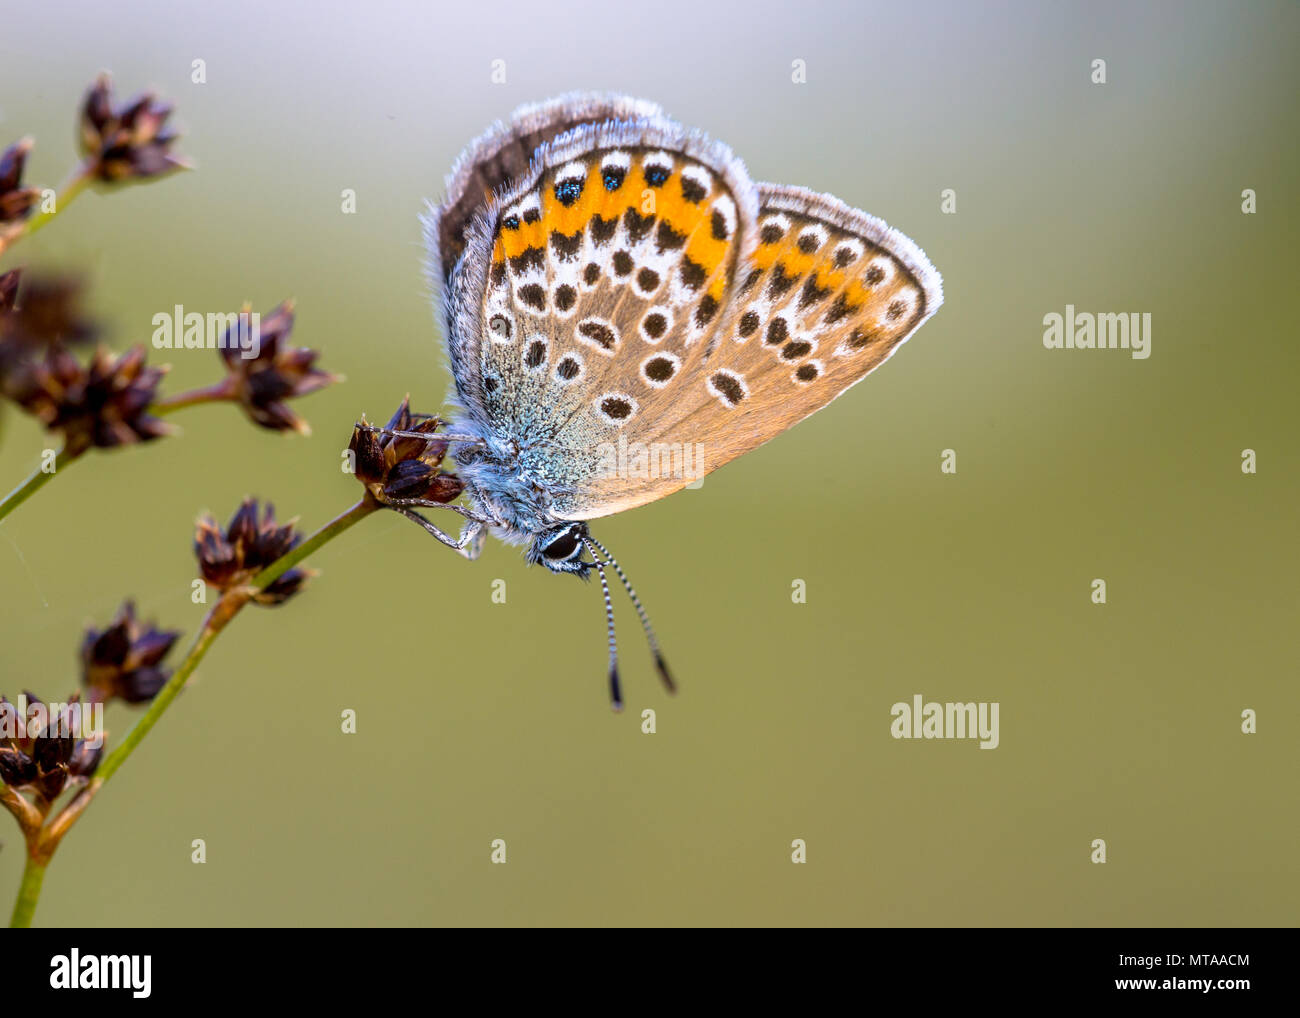 Hembra con clavos de plata (azul Plebejus argus) butterfly descansando y preparándose para la noche en flor afilados Rush (Juncus acutiflorus) en su hábitat natural Foto de stock